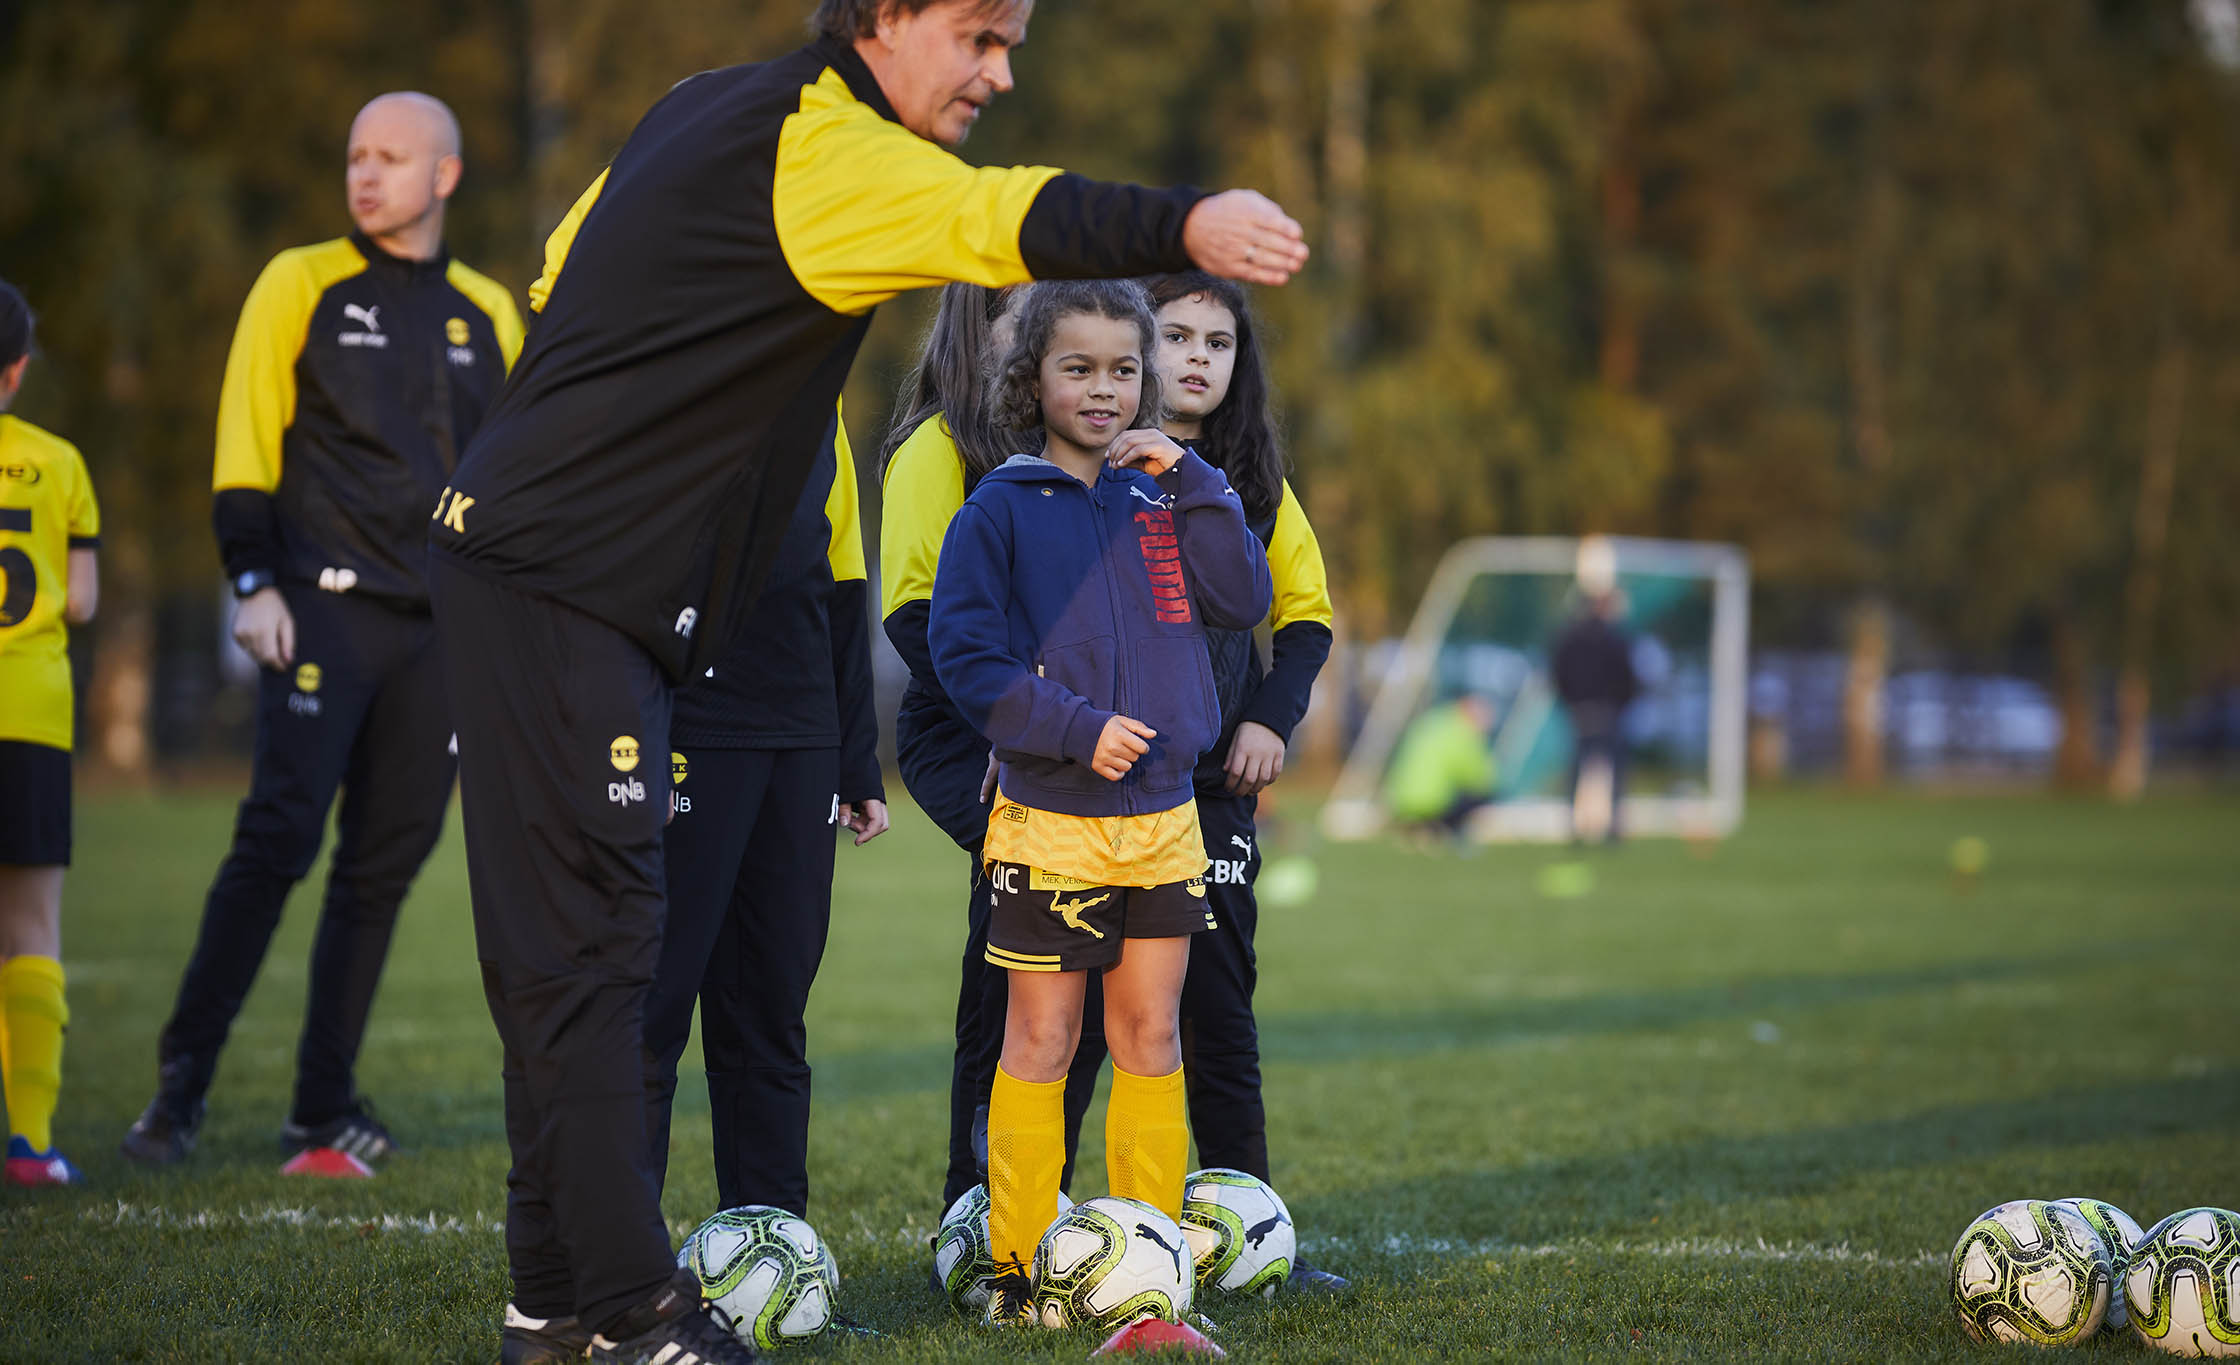 – Dersom barn og unge skal prioriteres, må det også oppleves slik, sier idrettspresident Berit Kjøll. Foto: Eirik Førde